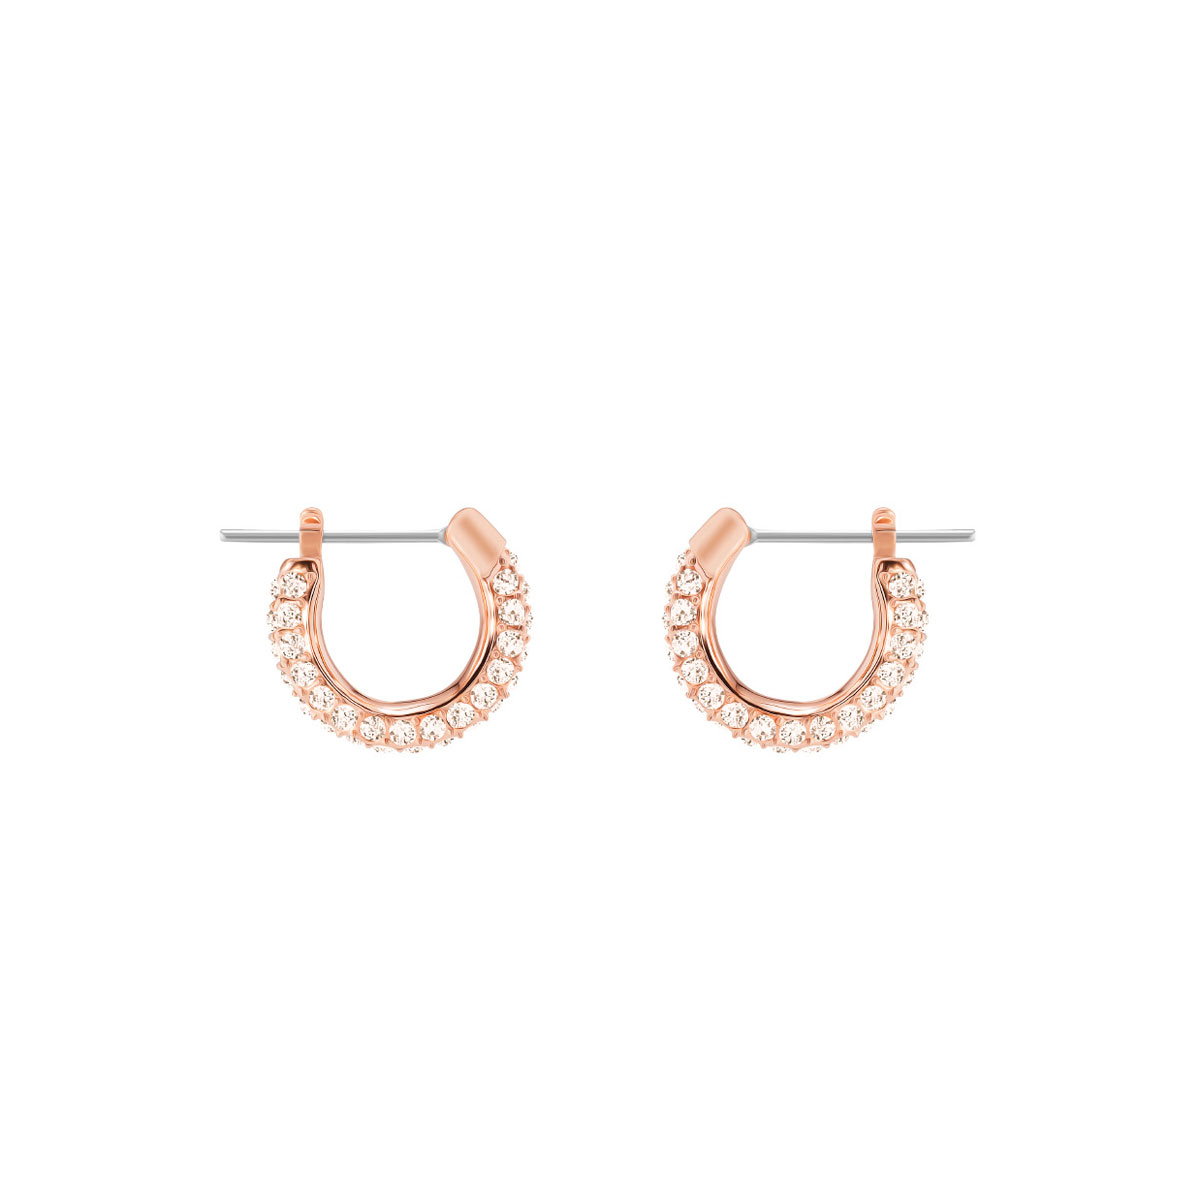 Swarovski Stone Pierced Earrings, Pink, Rose Gold